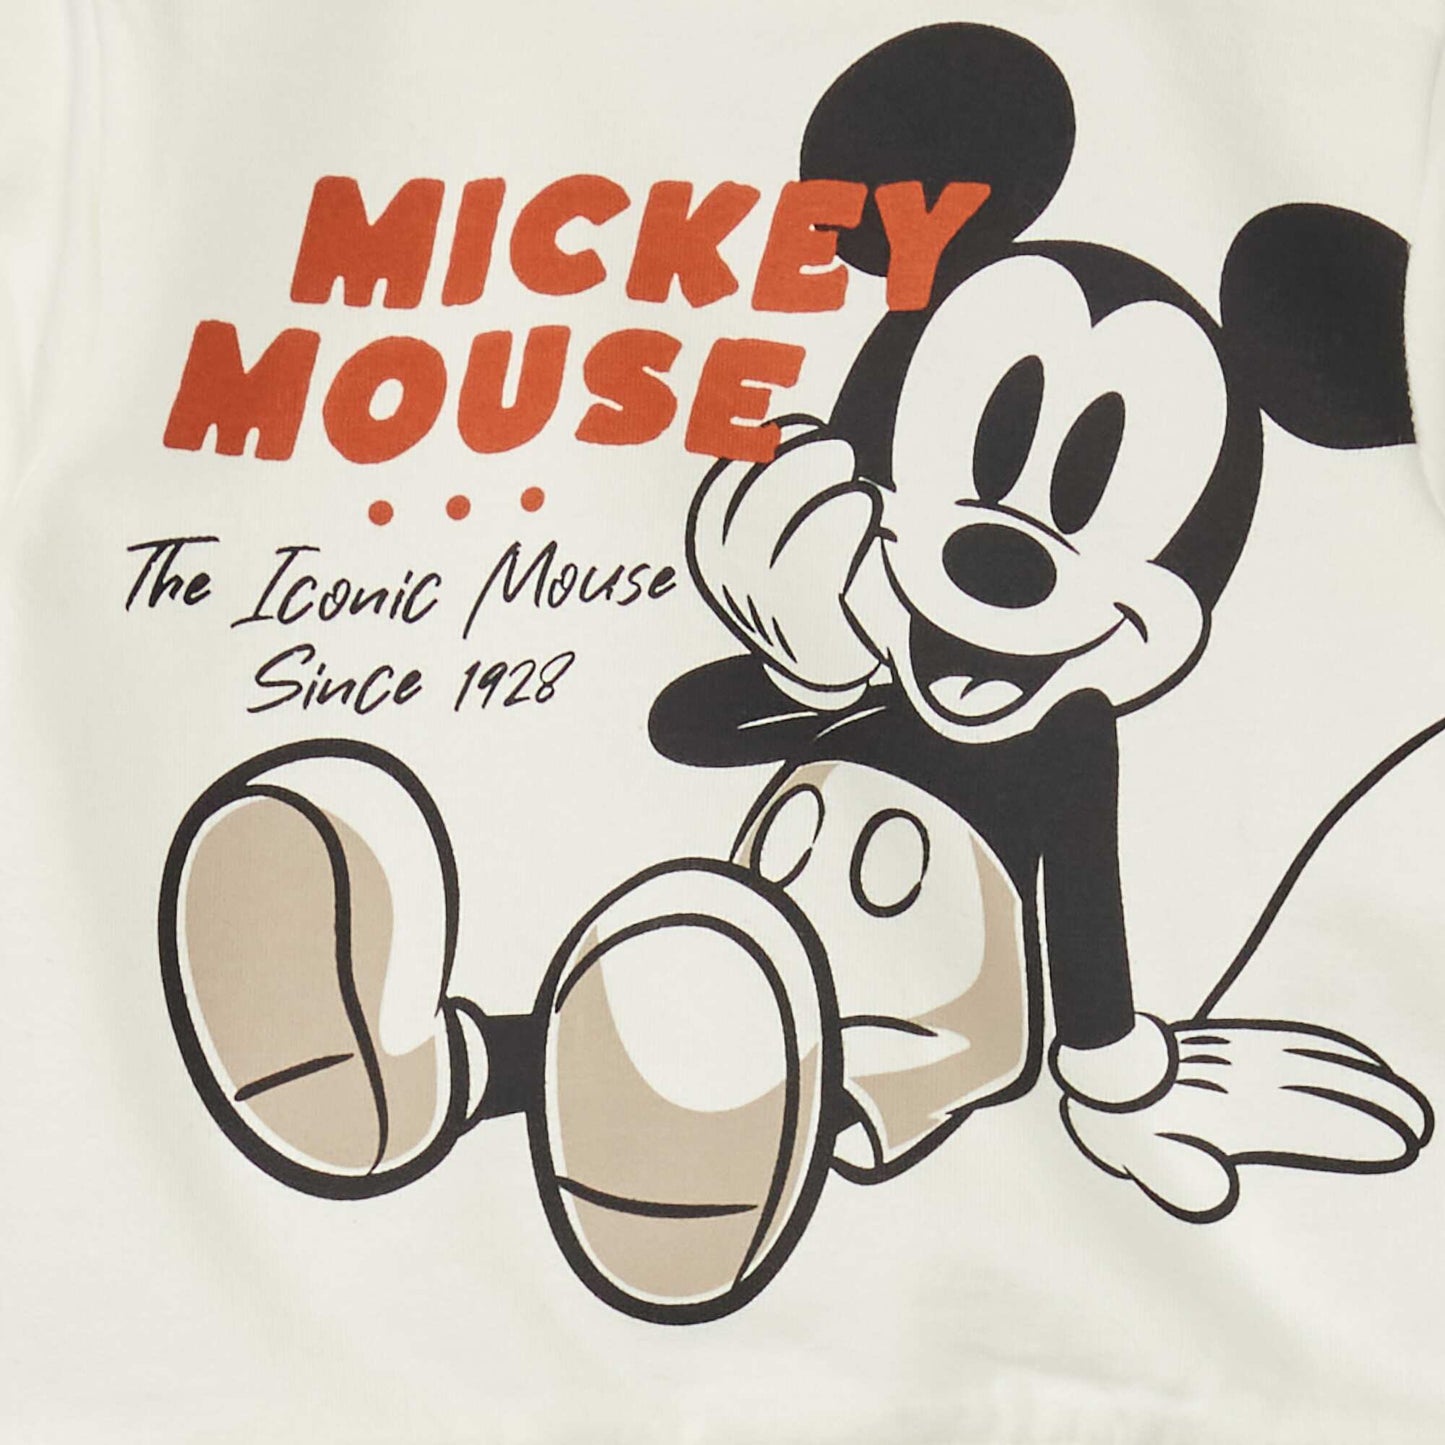 Ensemble sweat + pantalon 'Mickey Mouse' Blanc/marron